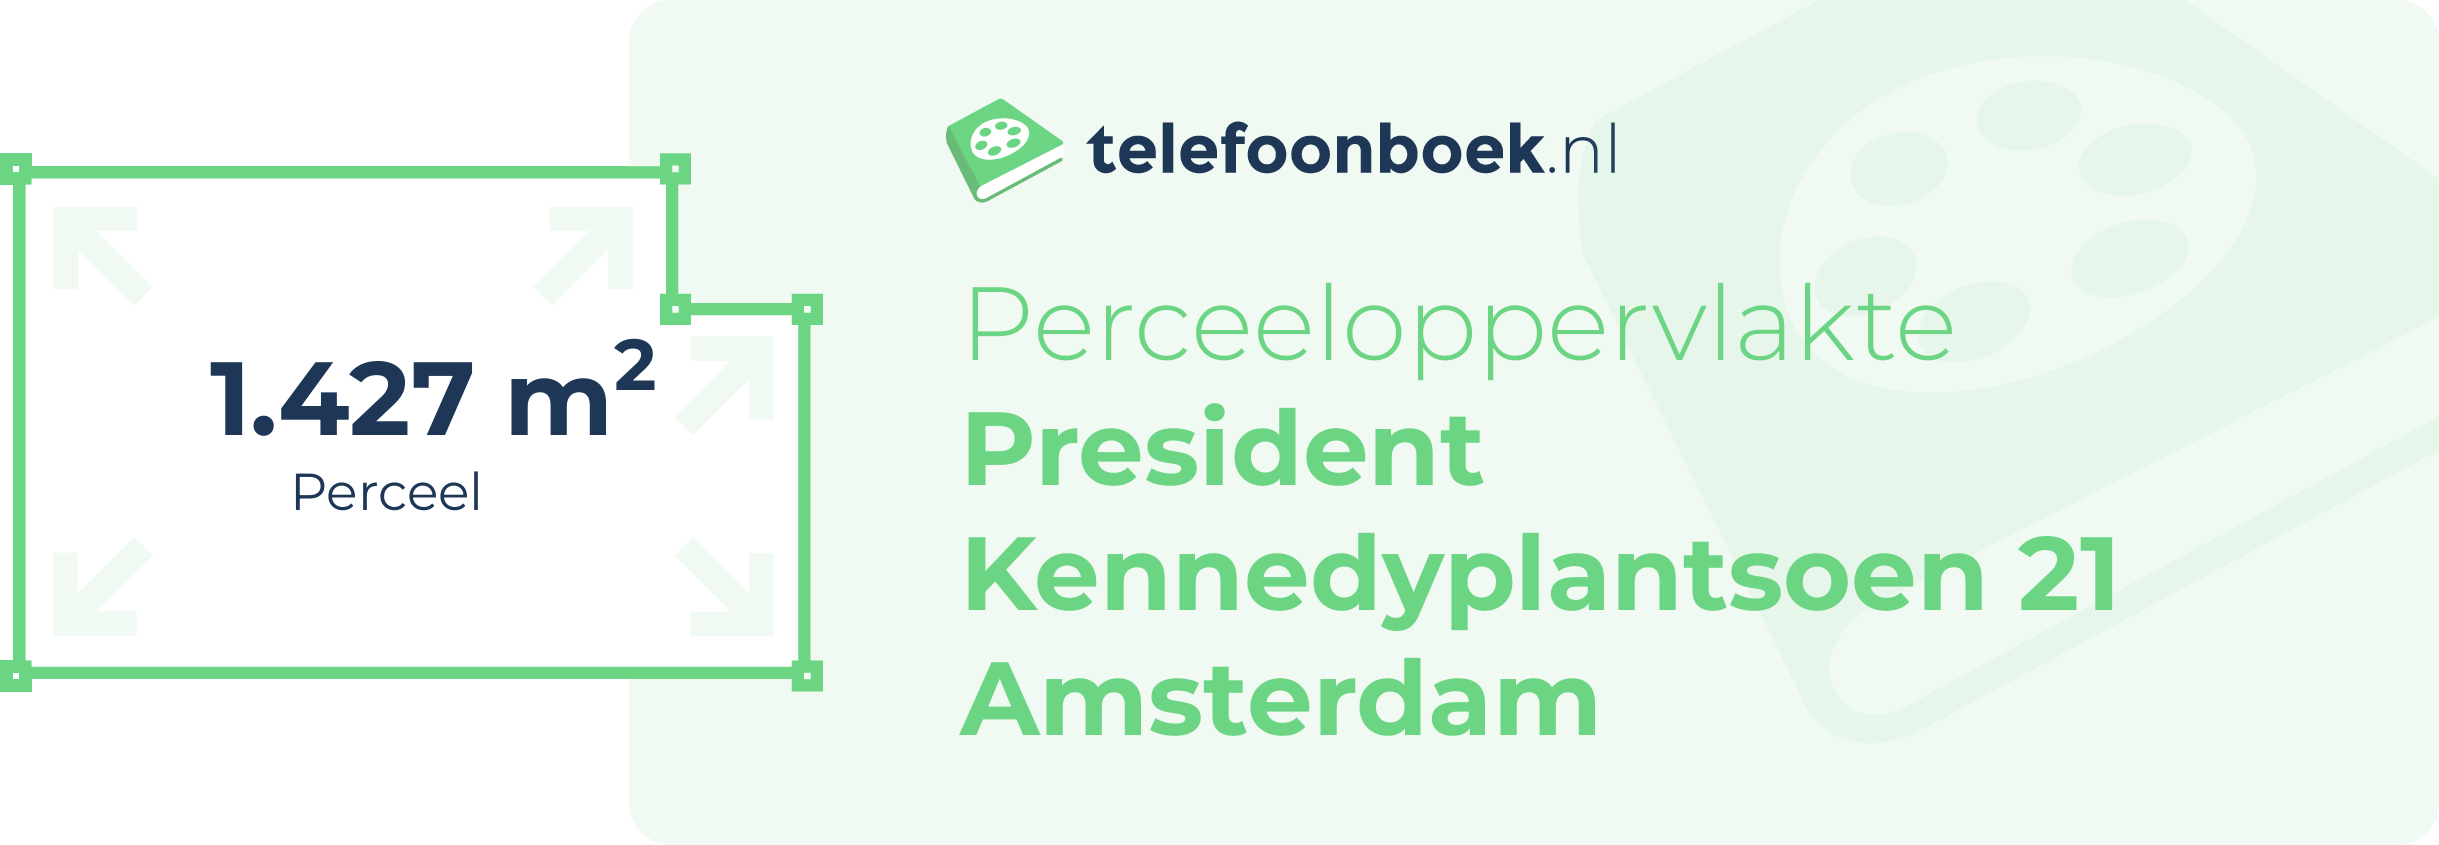 Perceeloppervlakte President Kennedyplantsoen 21 Amsterdam